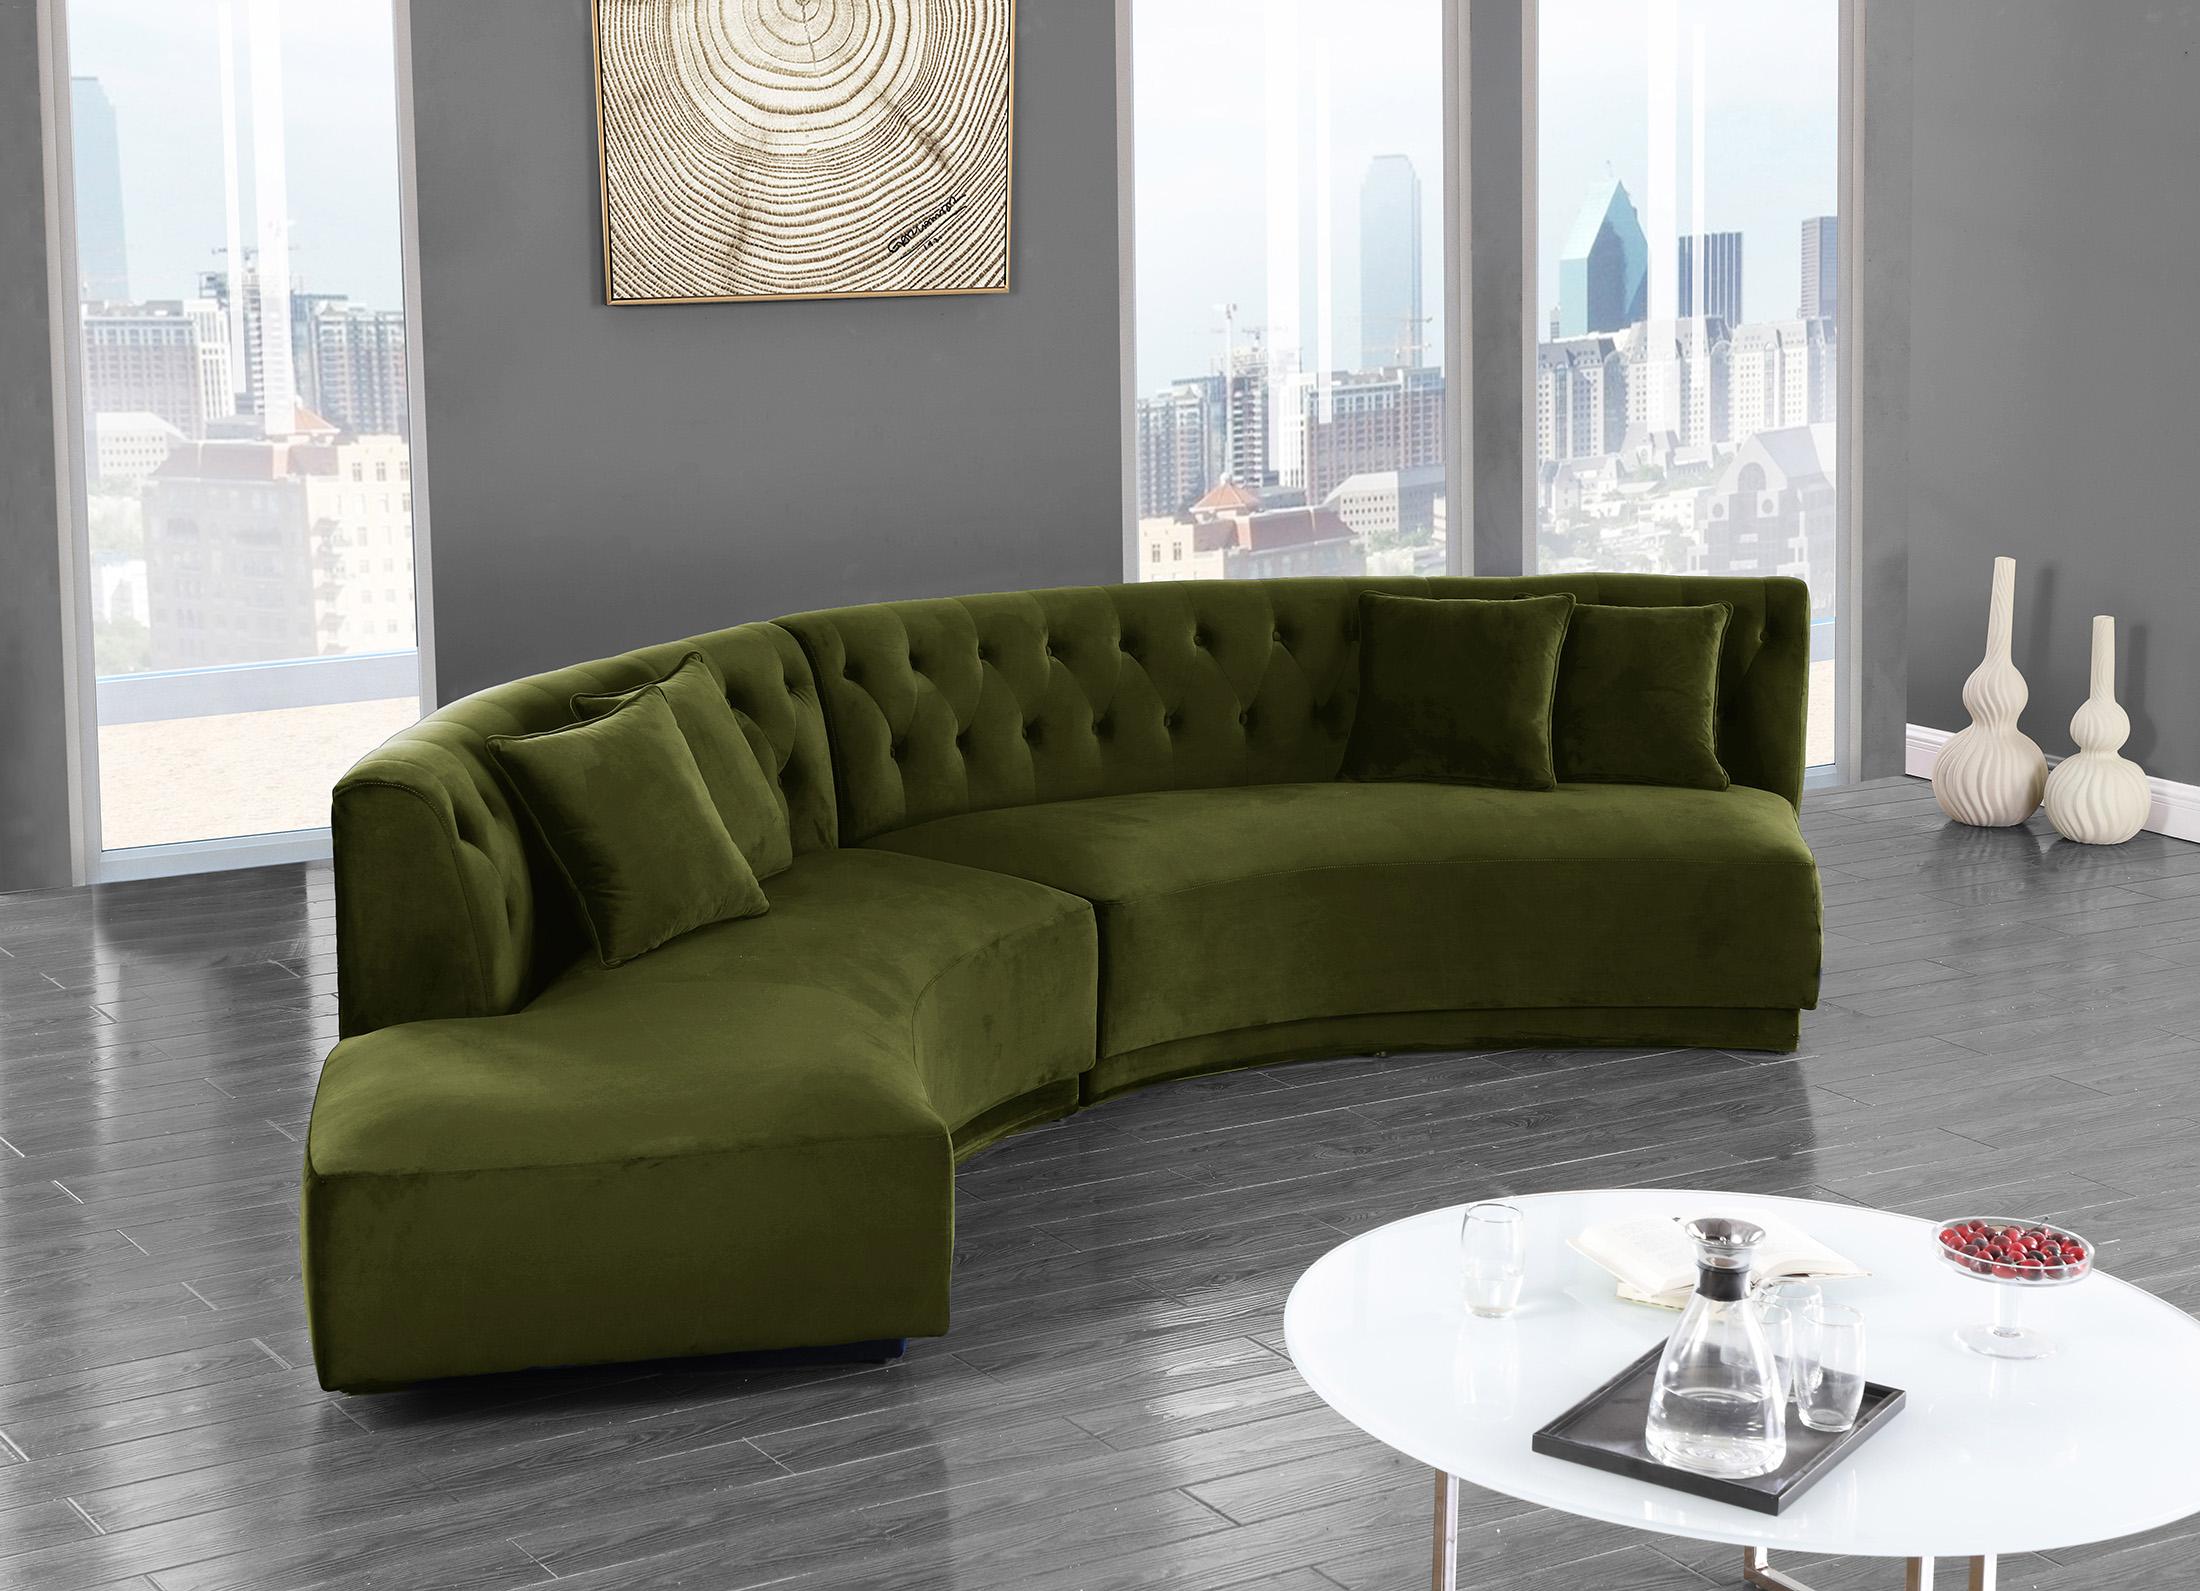 

    
Olive Velvet Tufted Sectional Sofa KENZI 641Olive Meridian Contemporary Modern
